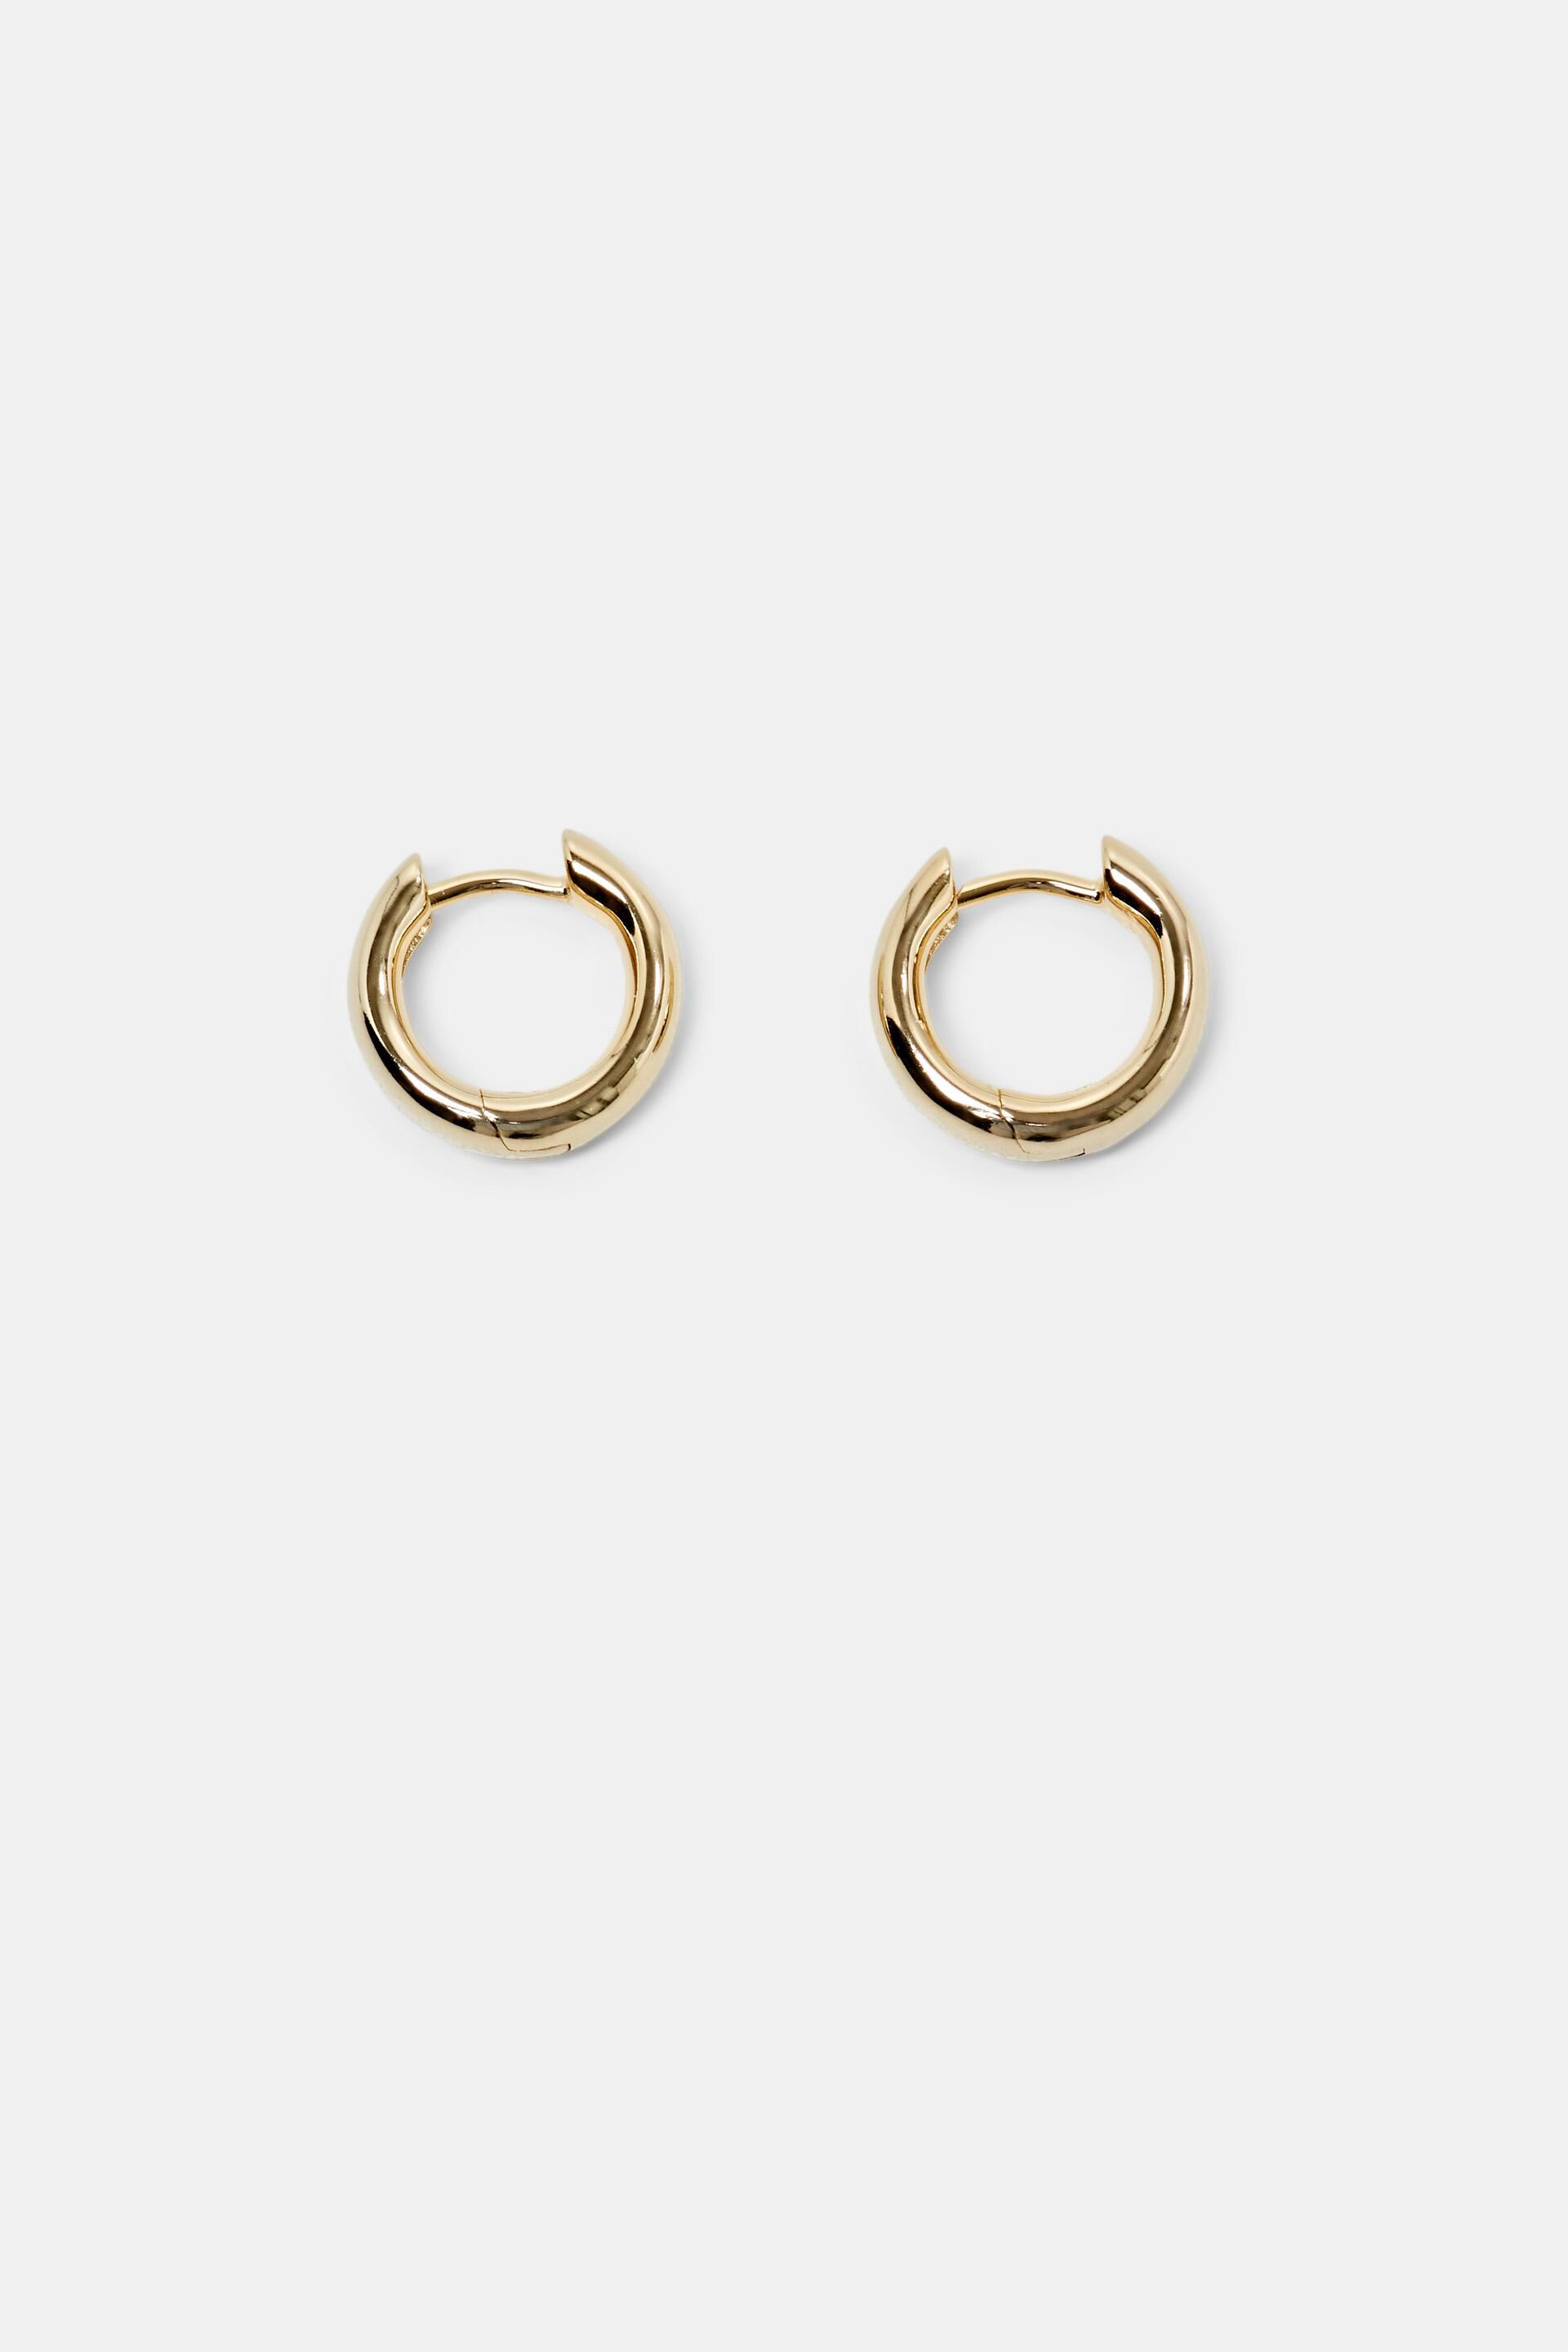 Esprit Online Store Gold-Tone Sterling Silver Huggie Hoop Earrings